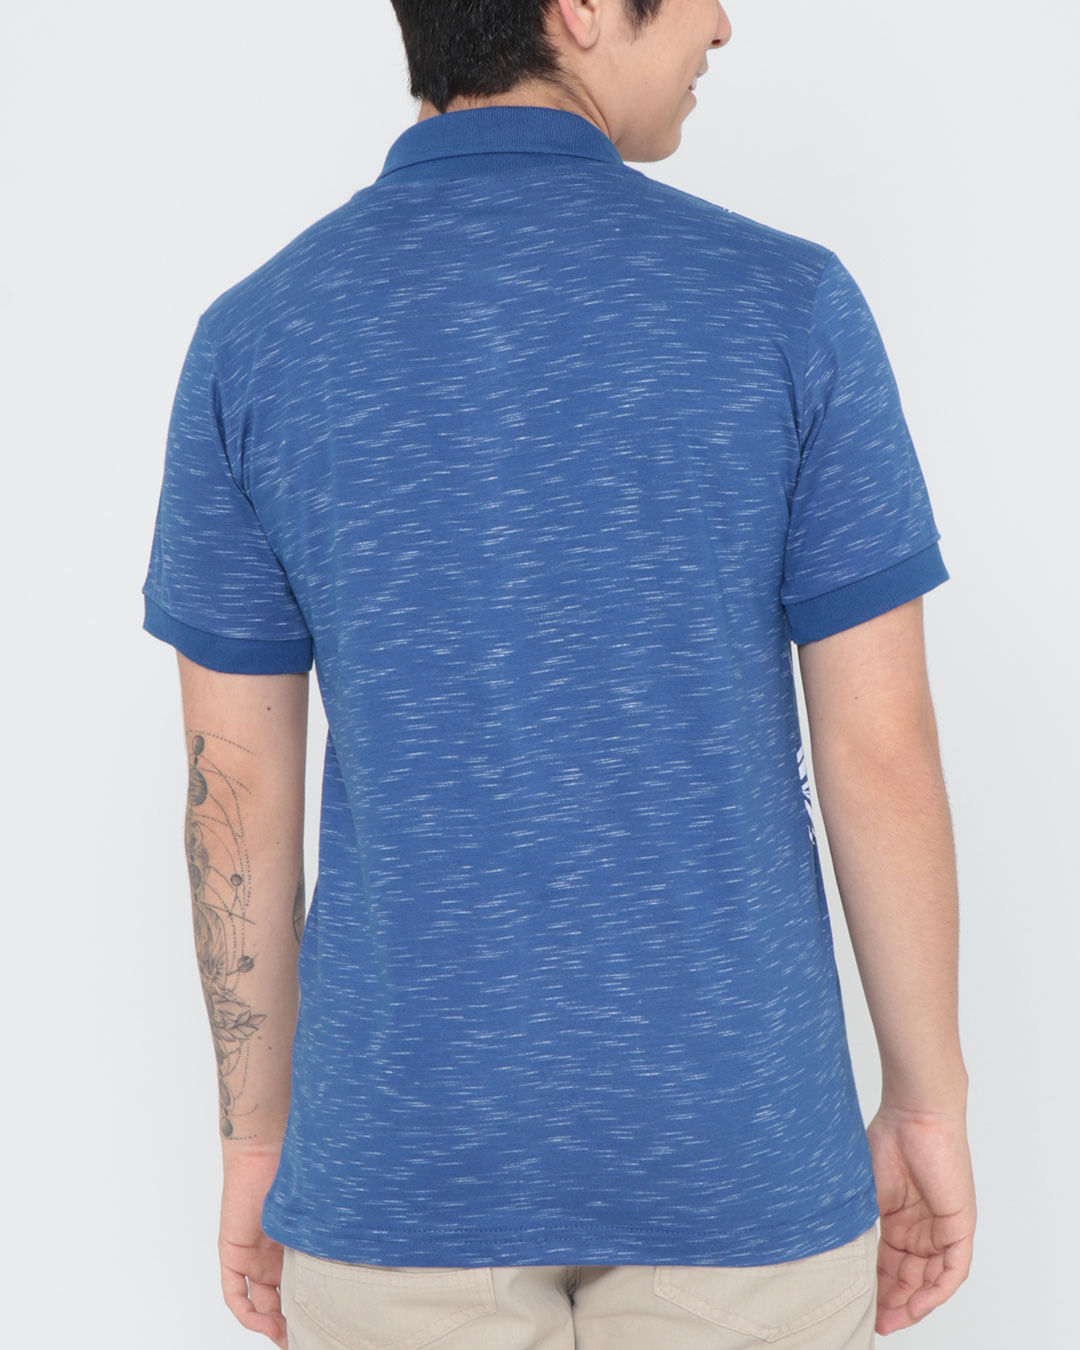 Camiseta-29771-Mc-M1016-Tropical---Azul-Medio